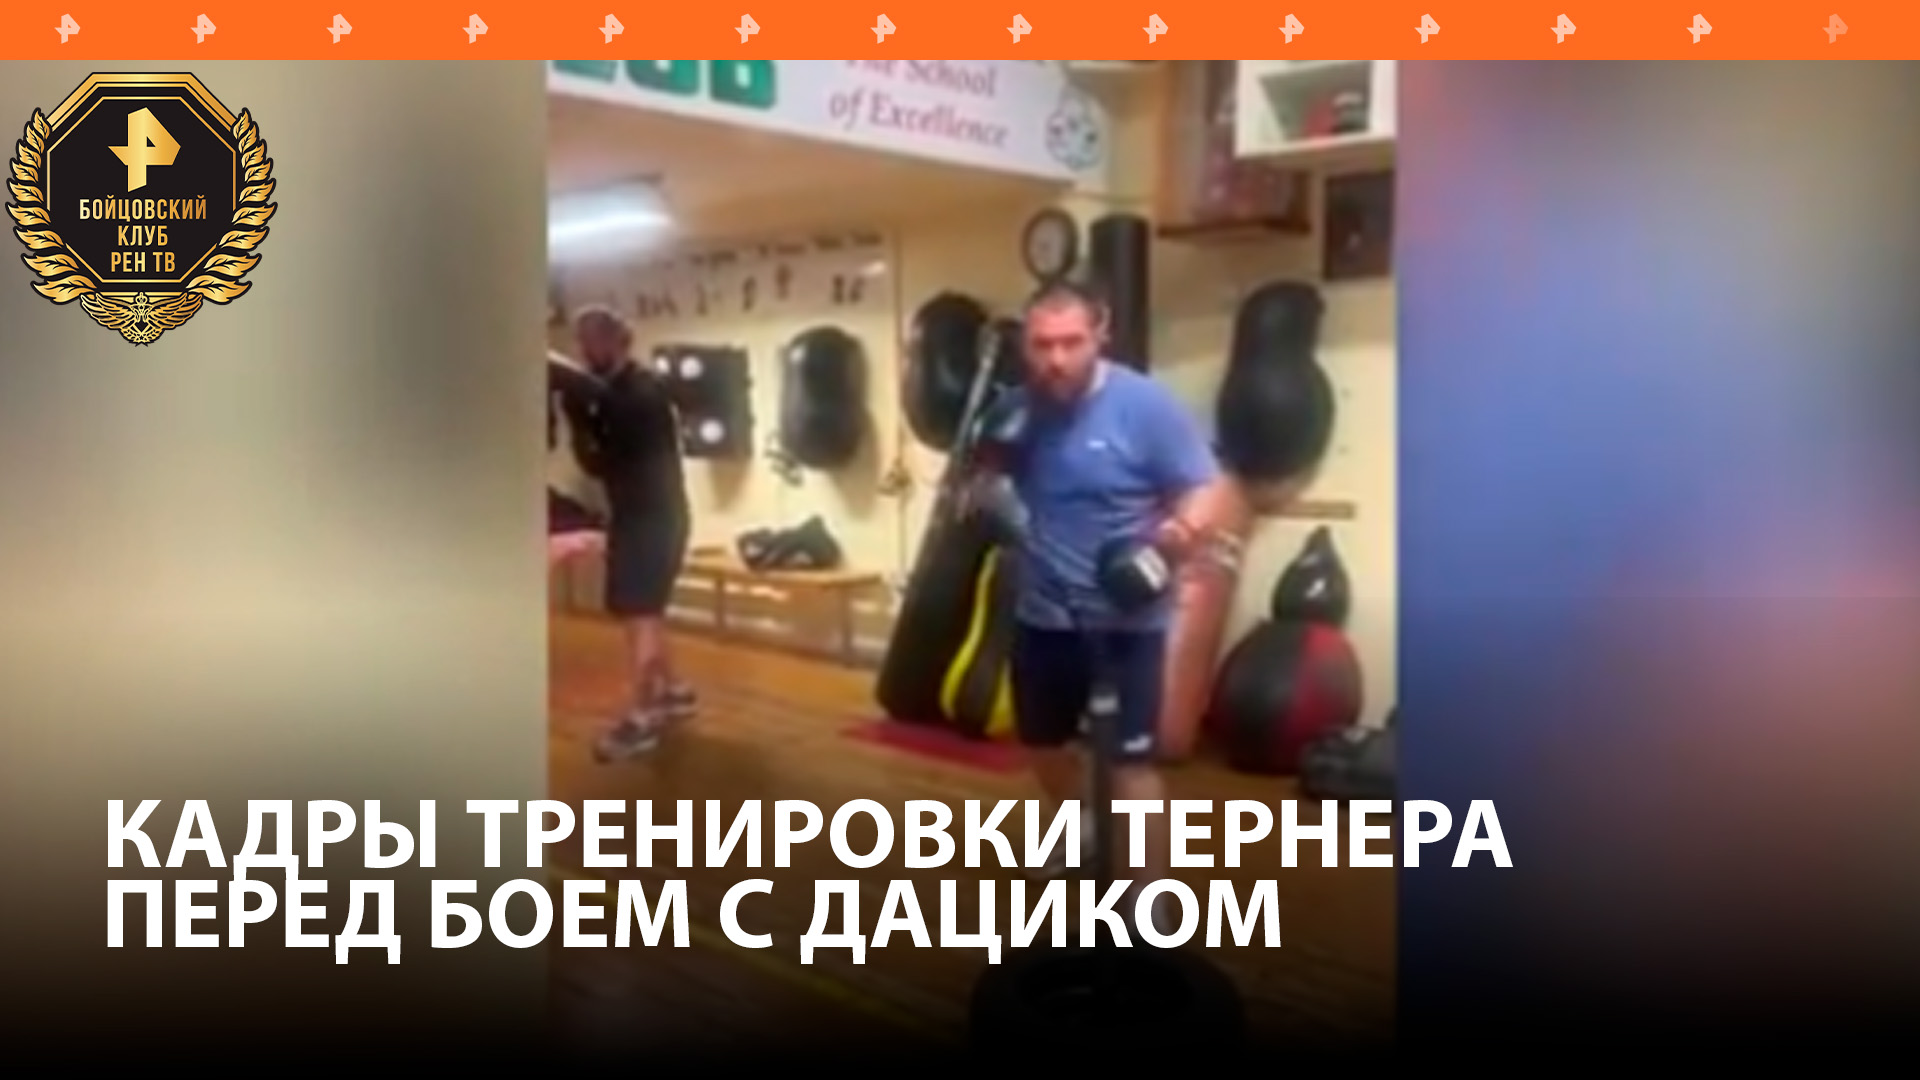 Тернер показал кадры тренировки перед боем с Дациком / Бойцовский клуб РЕН ТВ